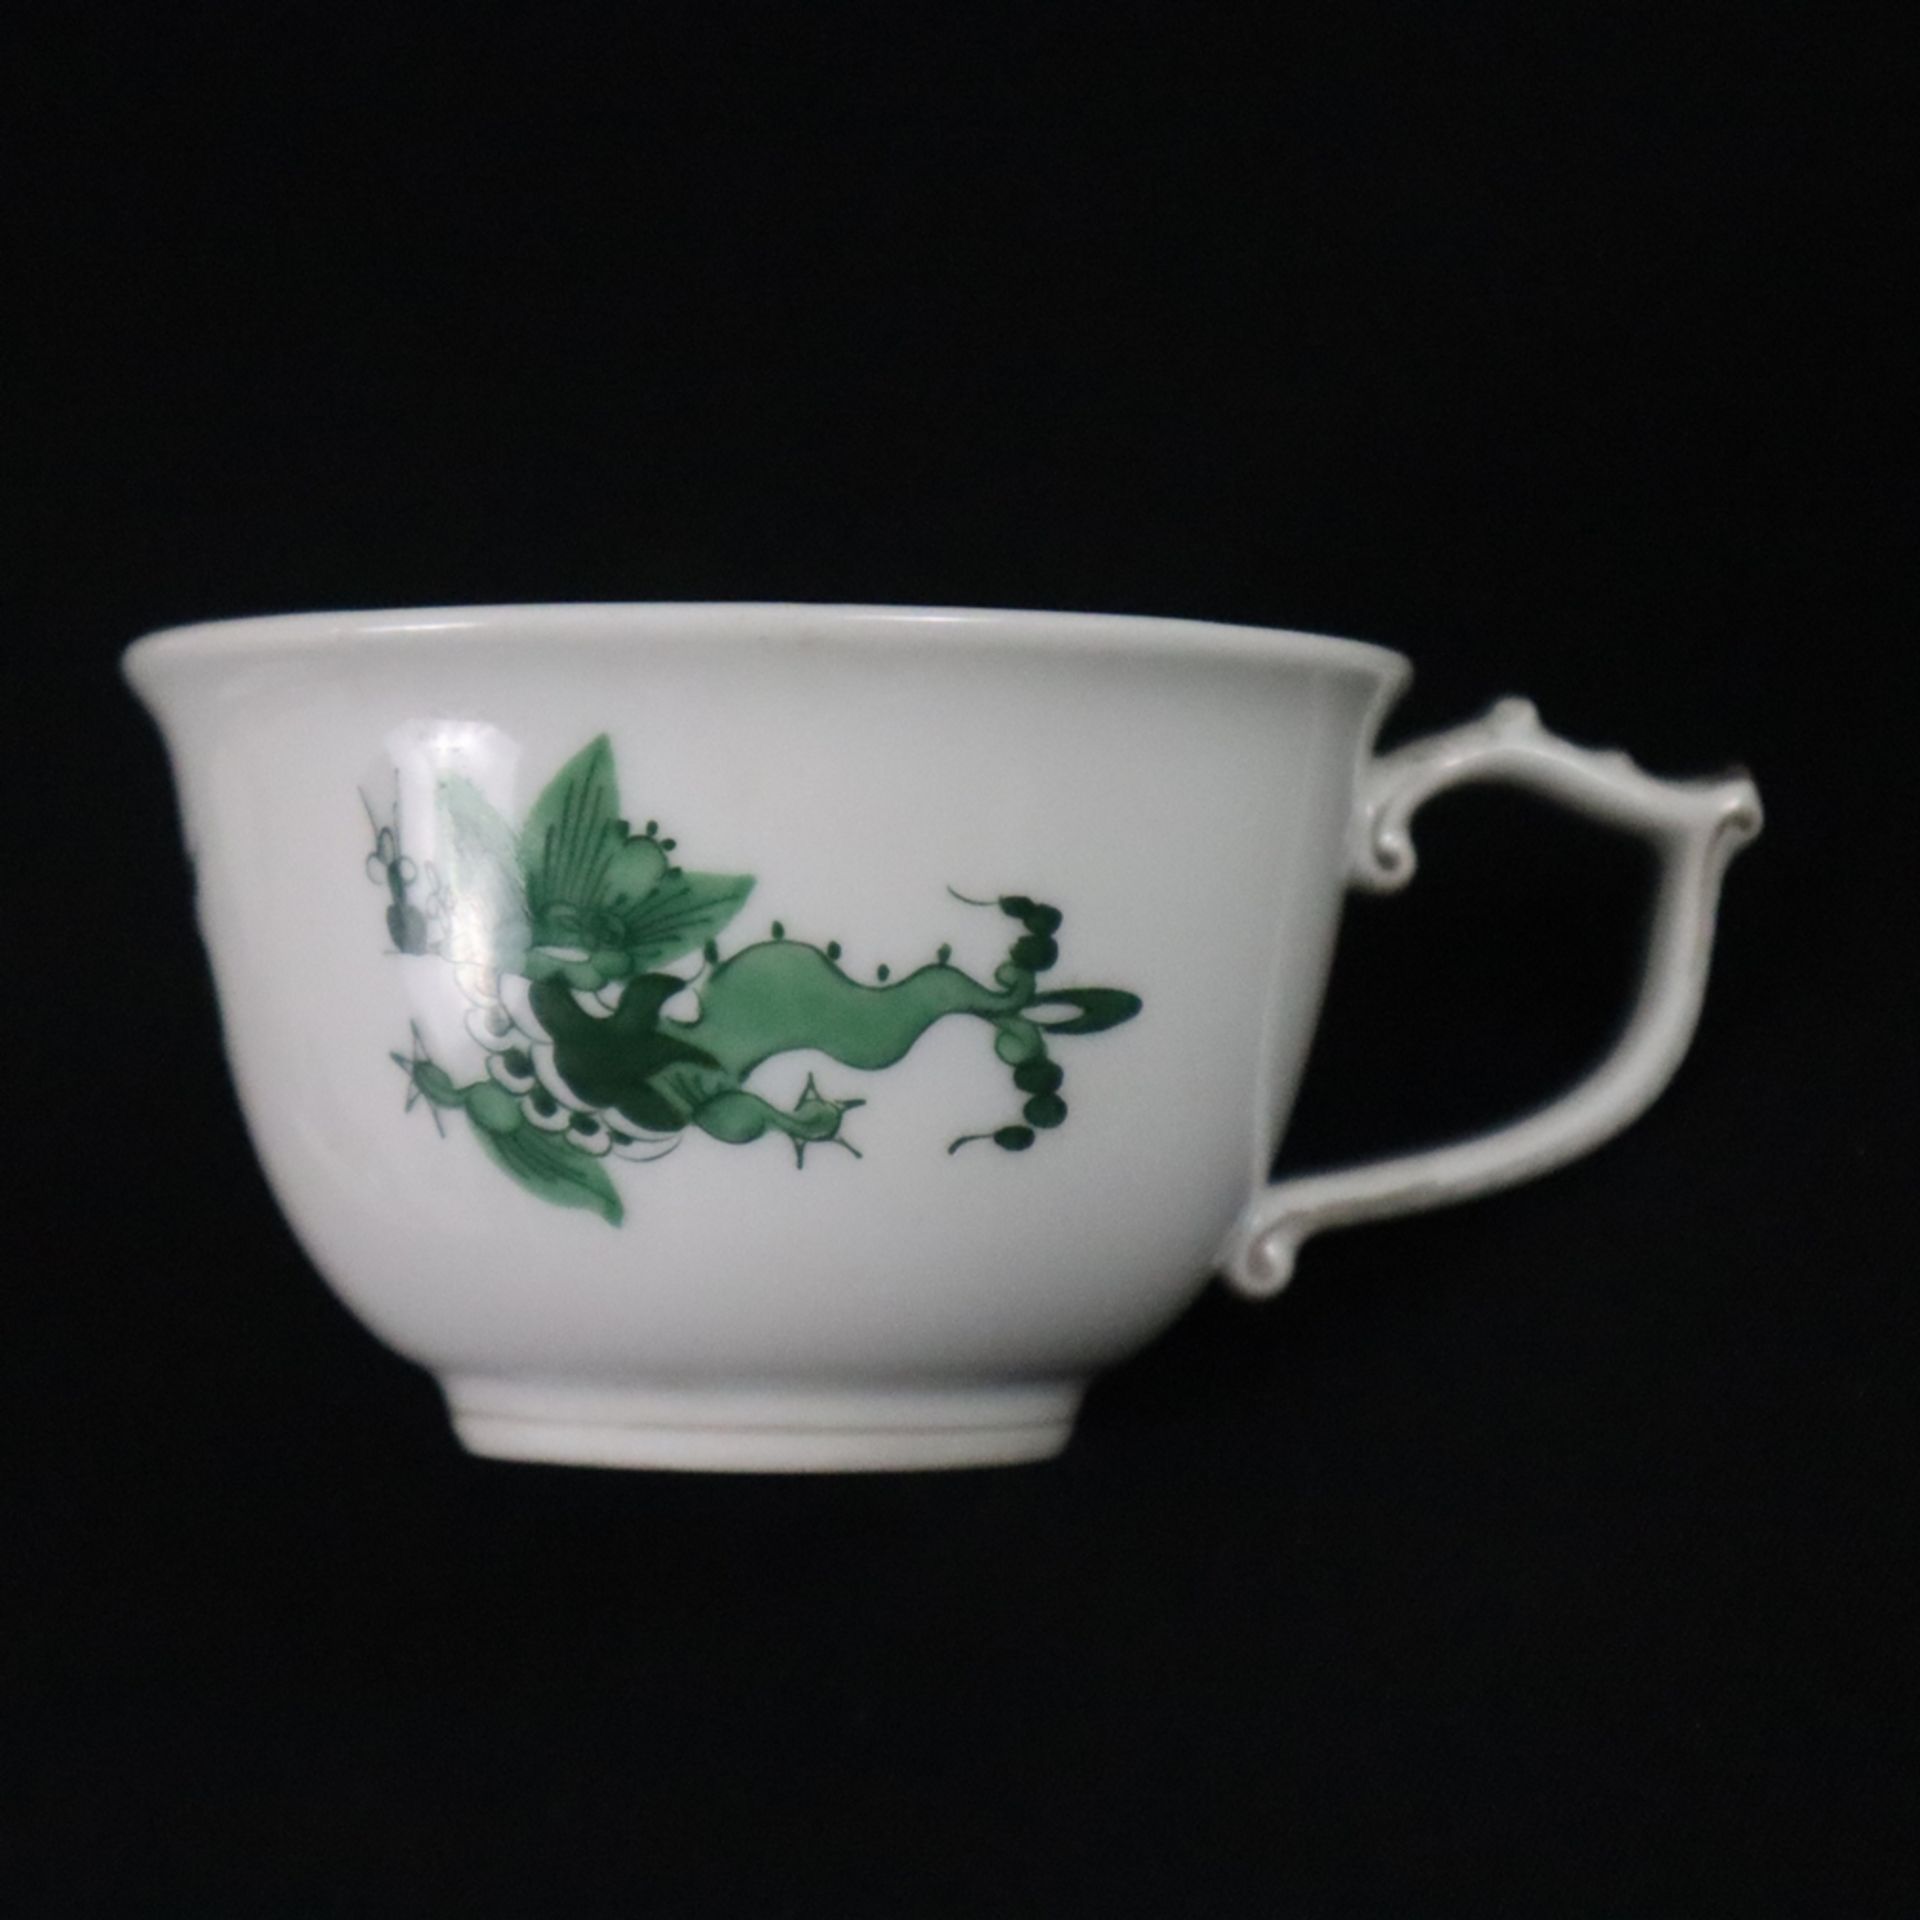 Mokkatasse mit Untertasse - Meissen, Porzellan, Dekor "Ming-Drache" in Grün und Grau, glatte Form m - Bild 2 aus 6